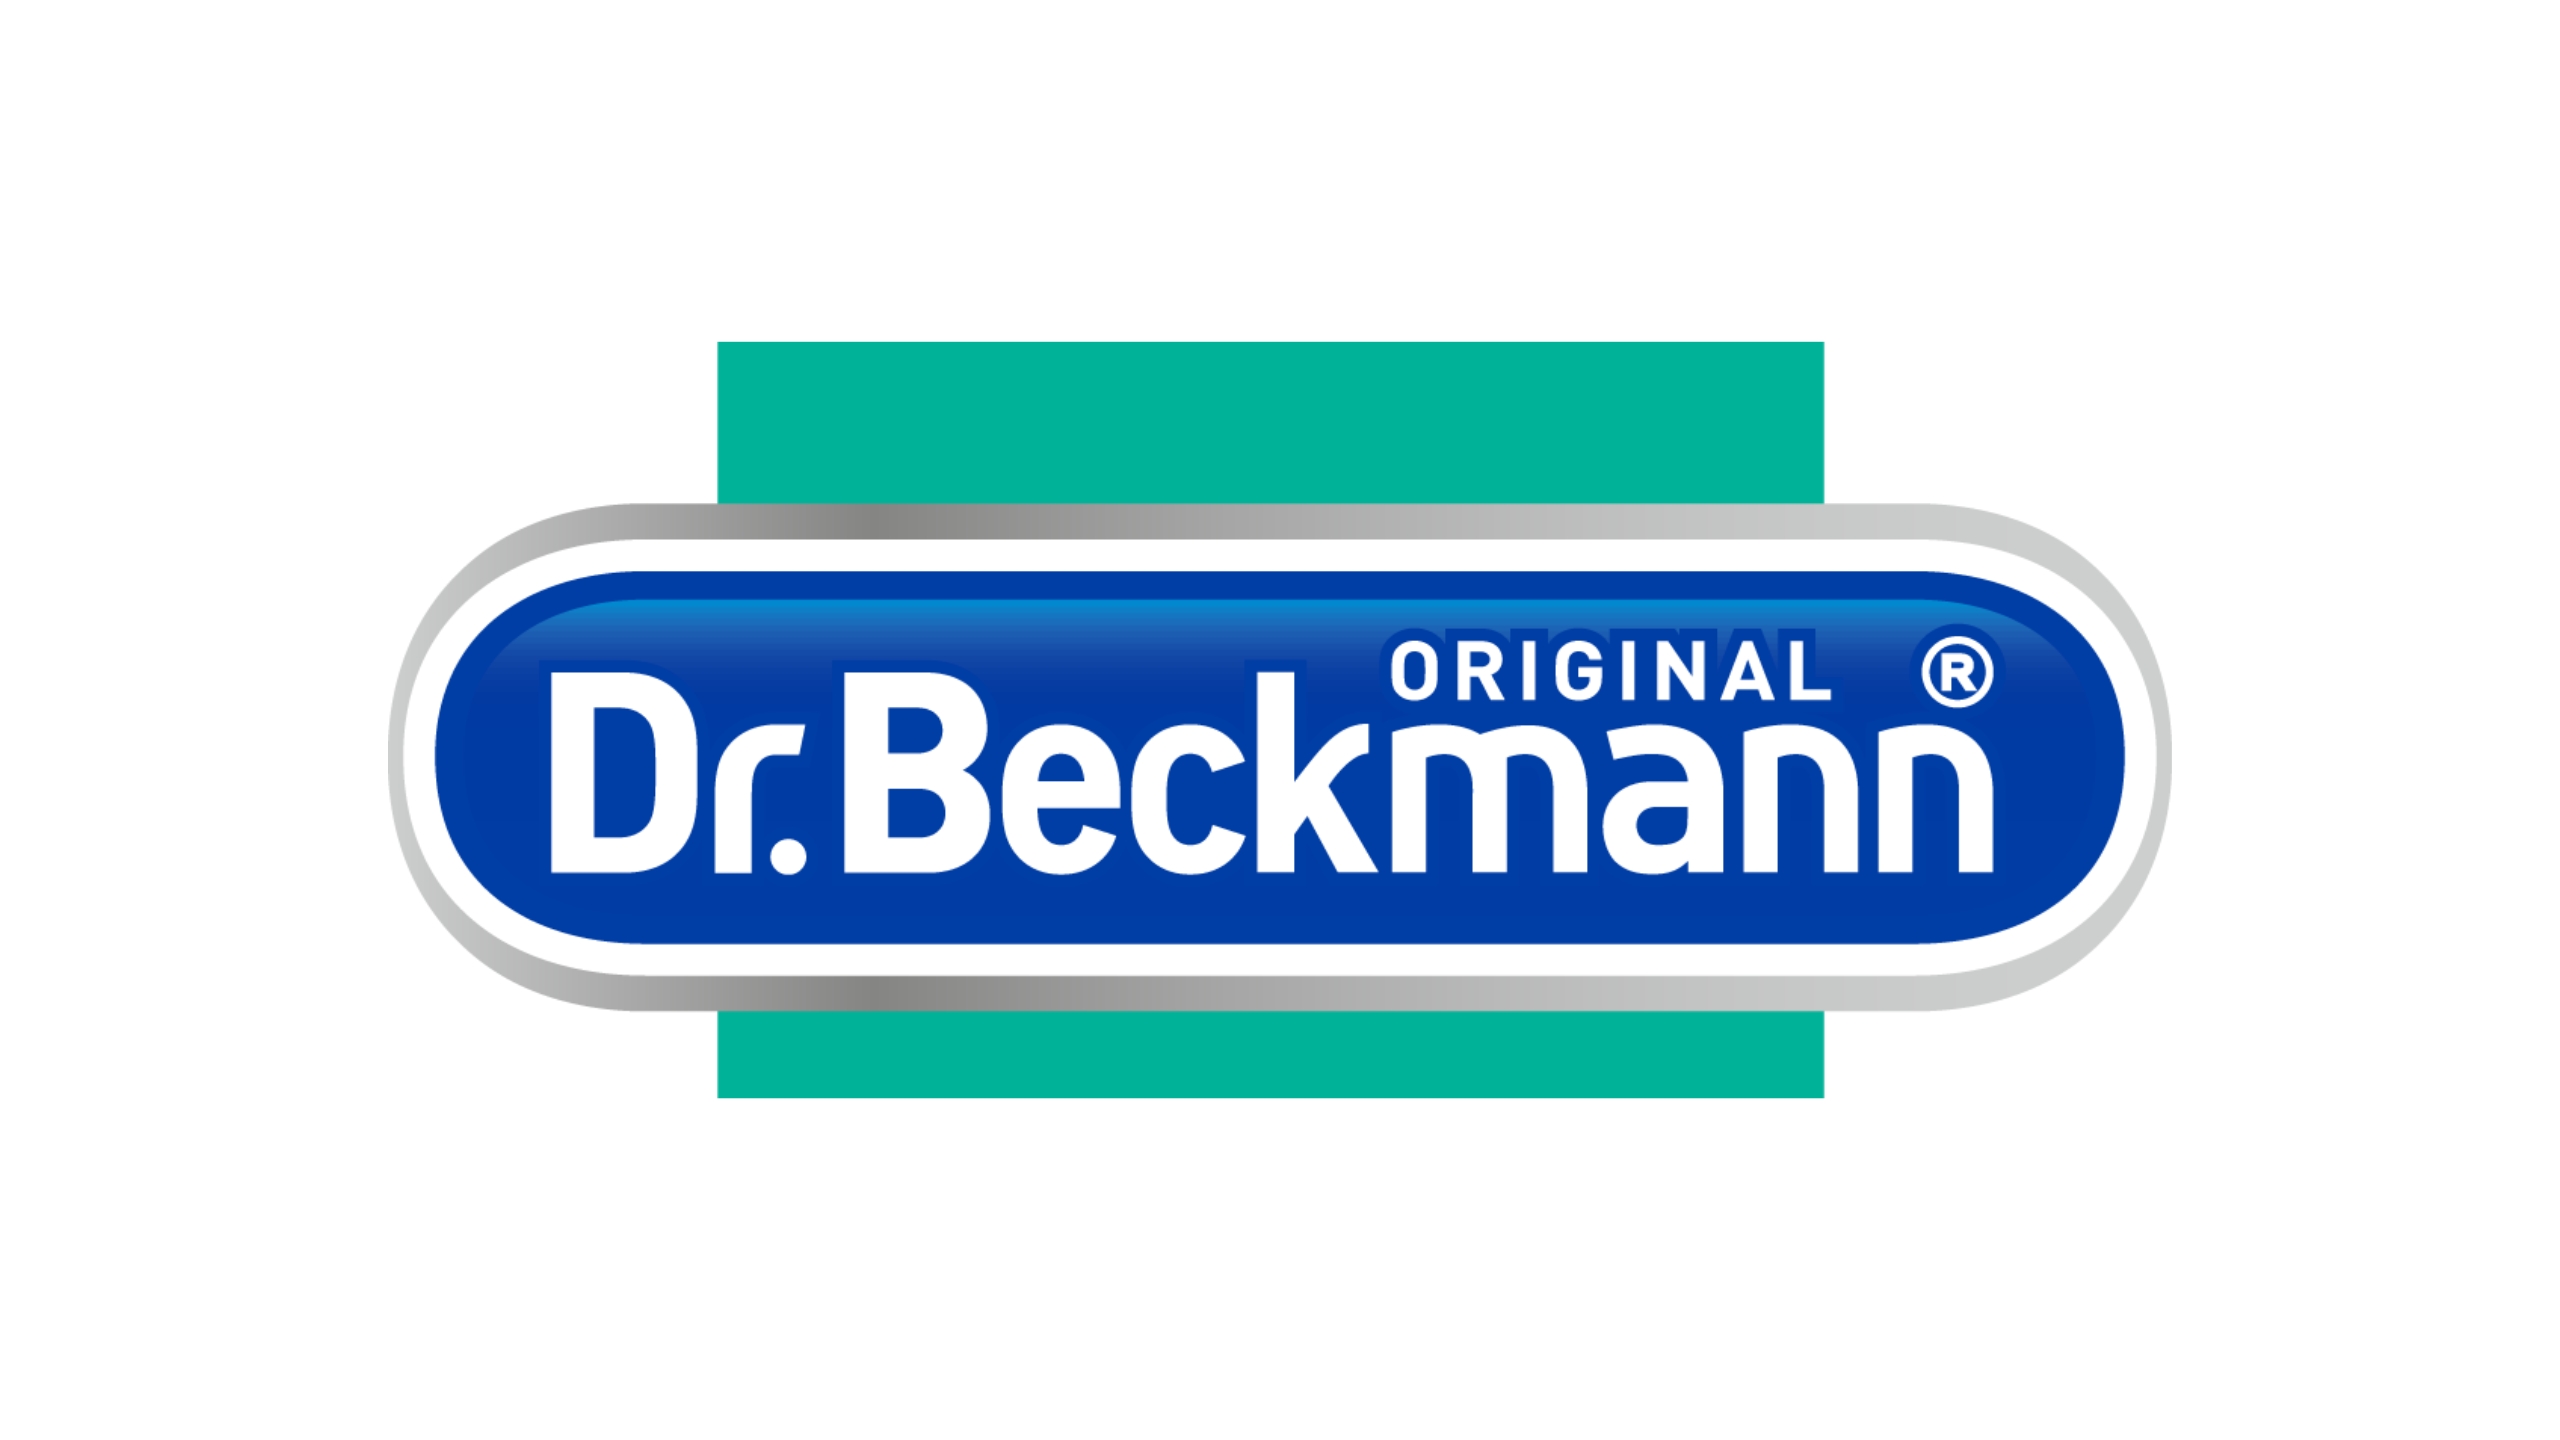 Delta Pronatura Ag Dr Beckmann Washing Machine Hygiene Cleaner 250 G